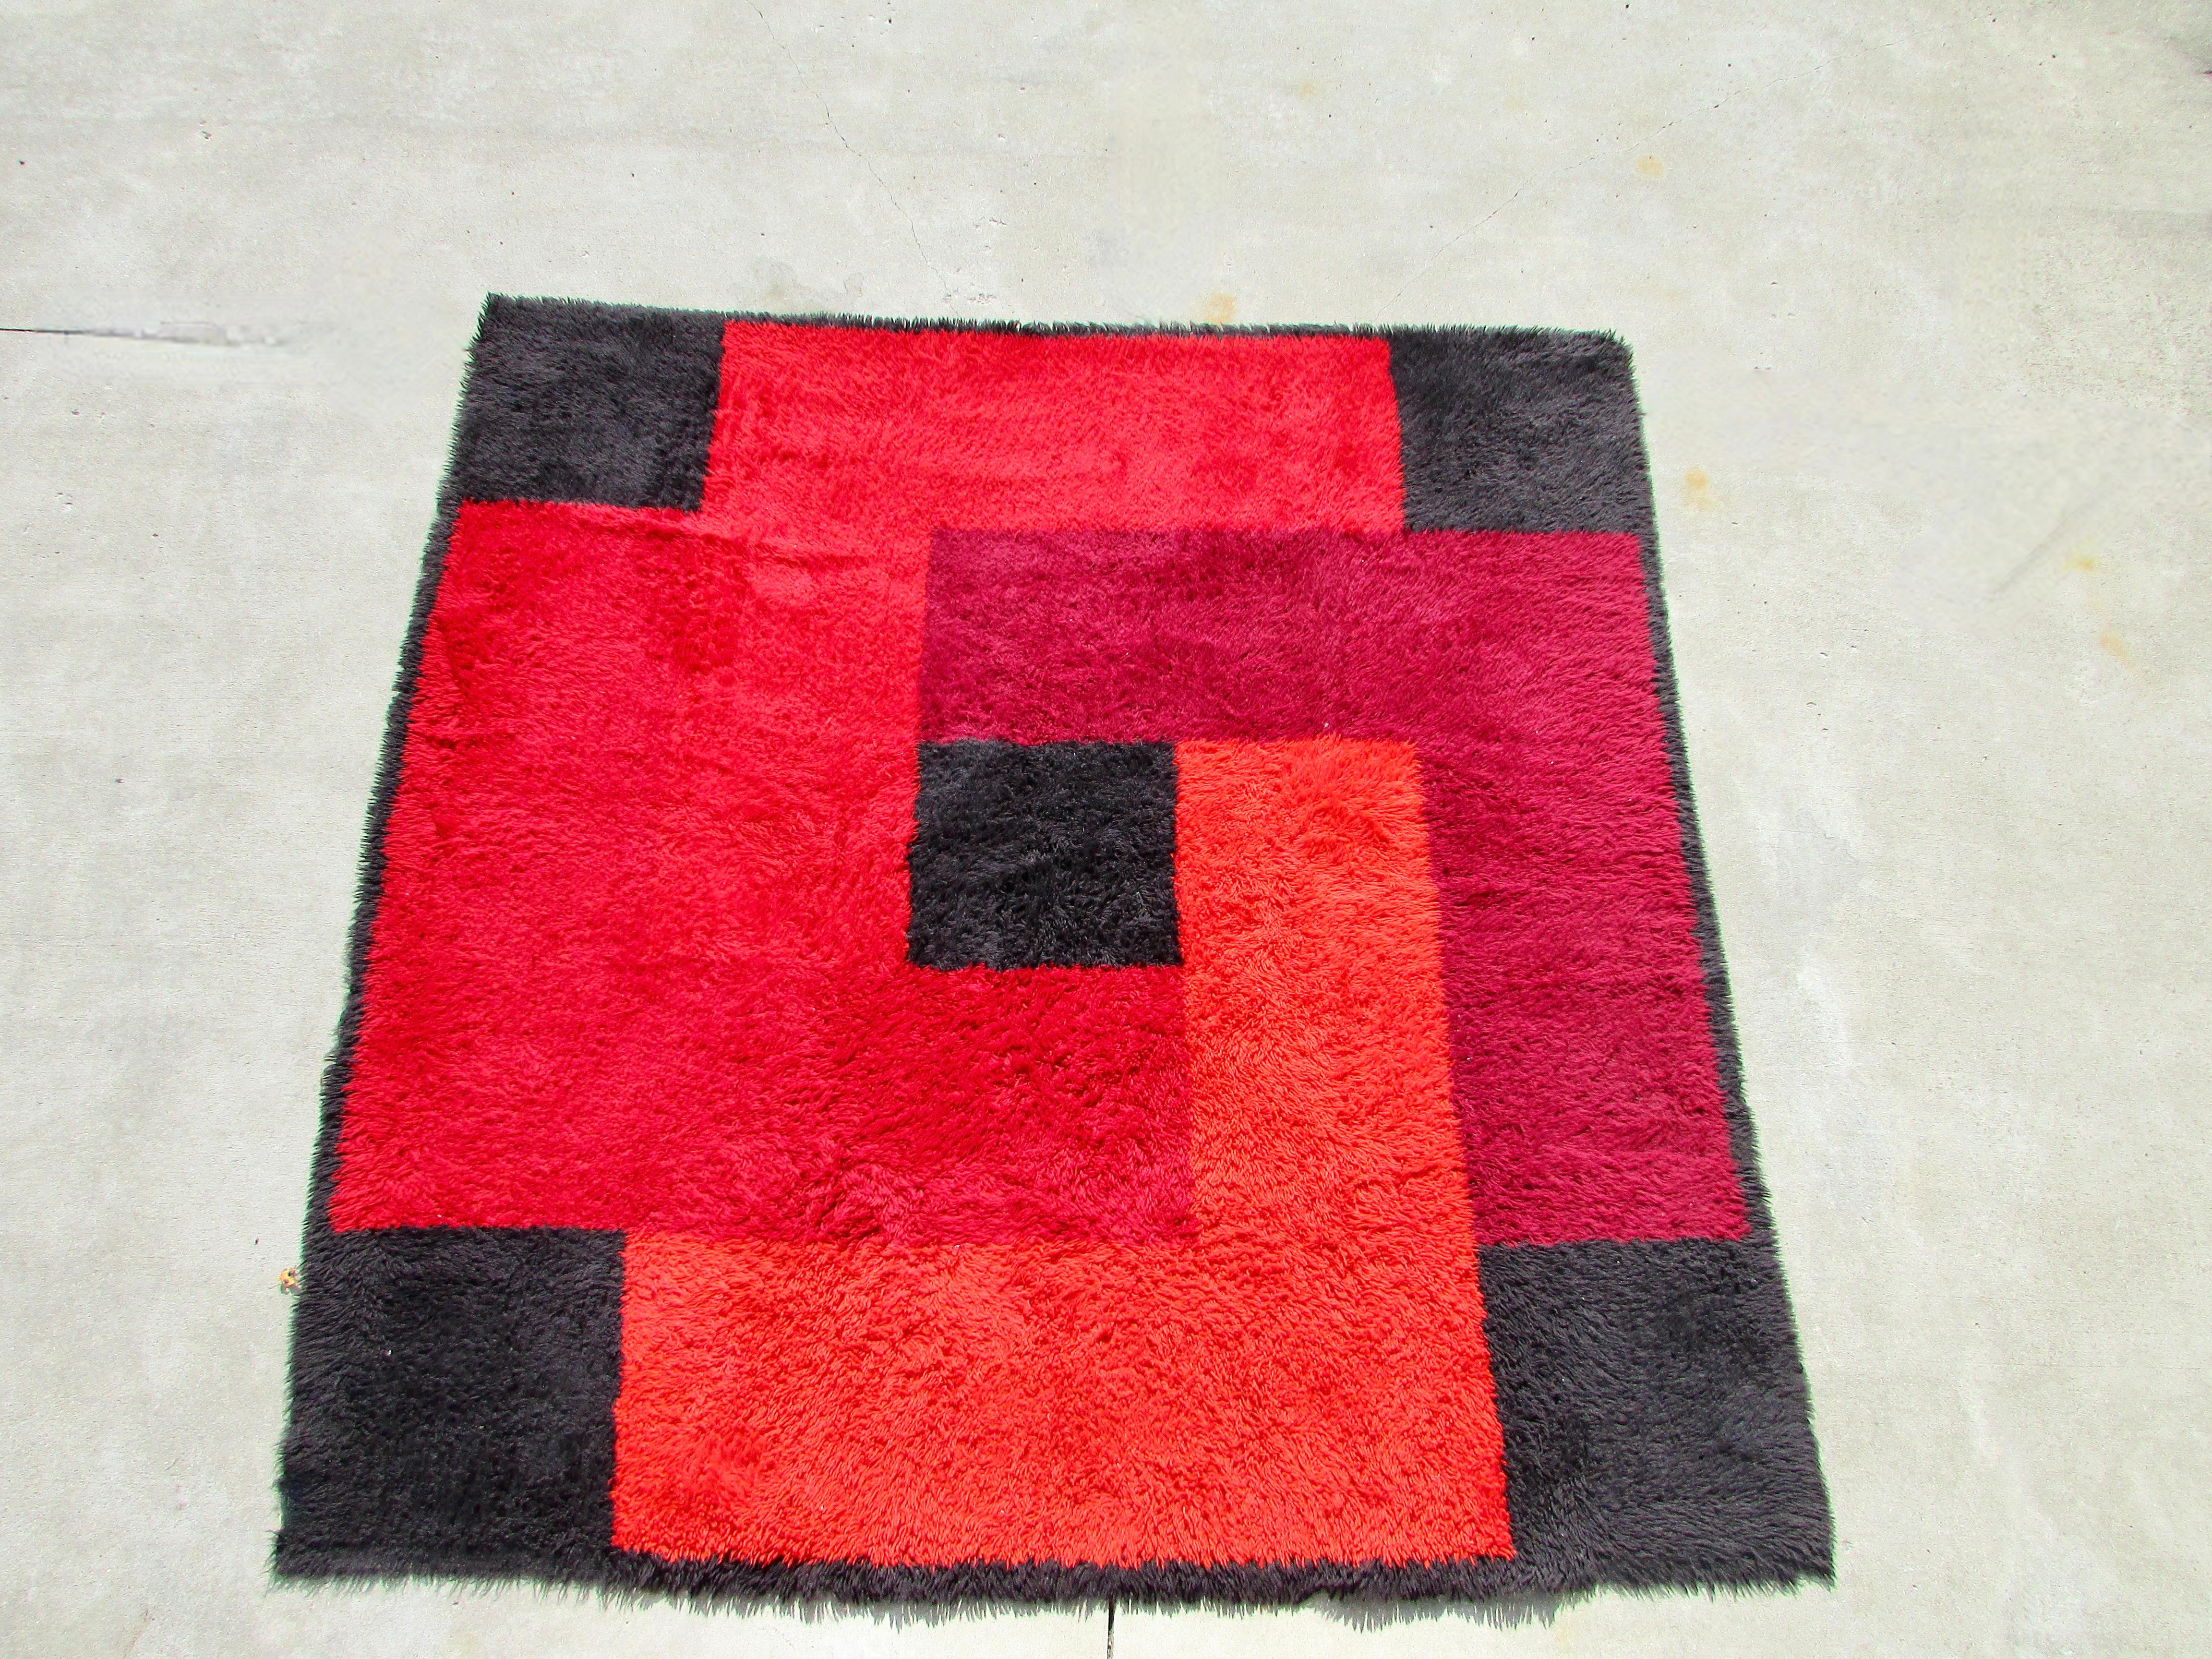 Dichter, quadratischer Rya-Teppich aus 100% Wolle, hergestellt in Dänemark um 1965 von Dania Taepper in einer geometrischen Collage aus kontrastierenden Rottönen und Schwarz. Maße: 90